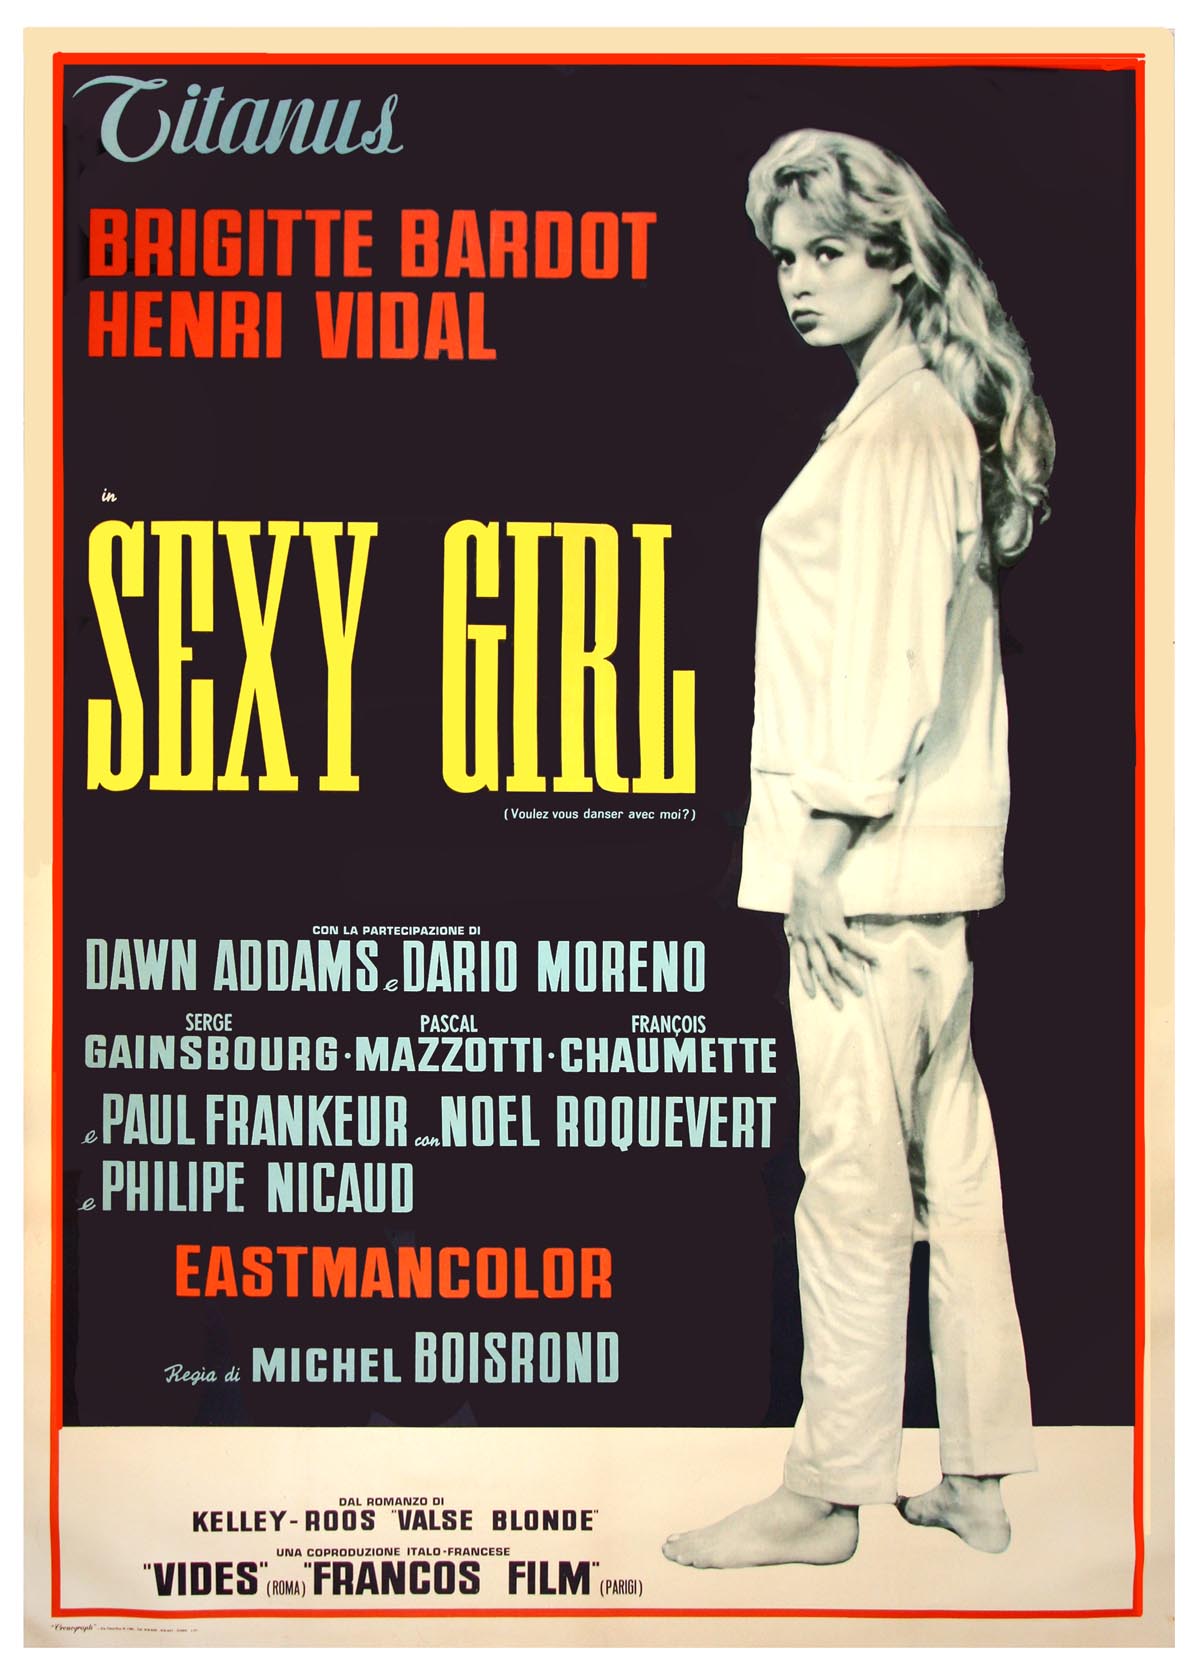 ¿Quiere usted bailar conmigo?, de Michel Boisrond (1959) *Sexy Girl se tituló en Italia.